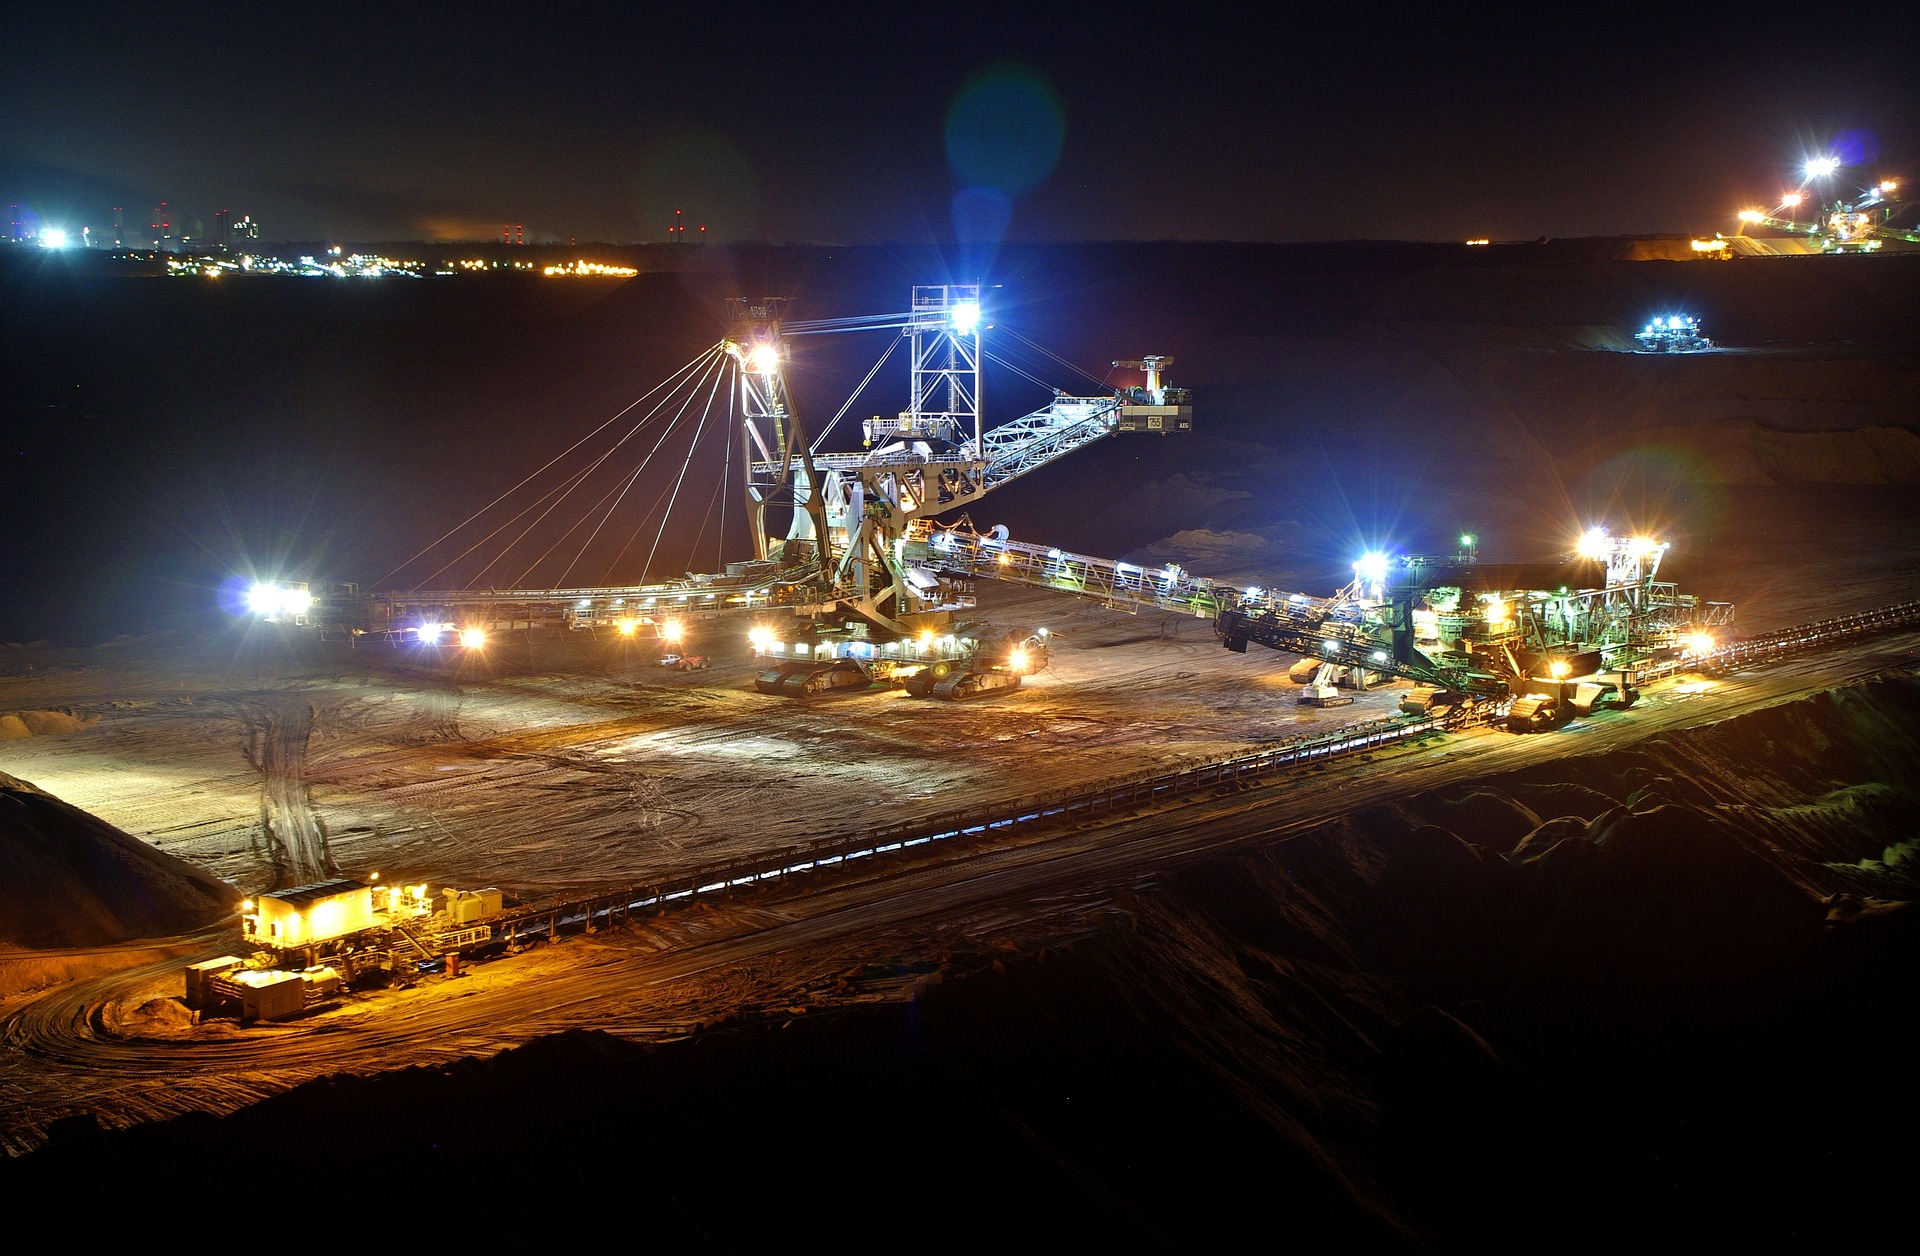 Alemanha, França e Itália cooperarão no fornecimento de matérias-primas críticas para transição energética. Na imagem: Máquinas em operação em área de mineração a céu aberto (Foto: Chris Wiedenhoff/Pixabay)